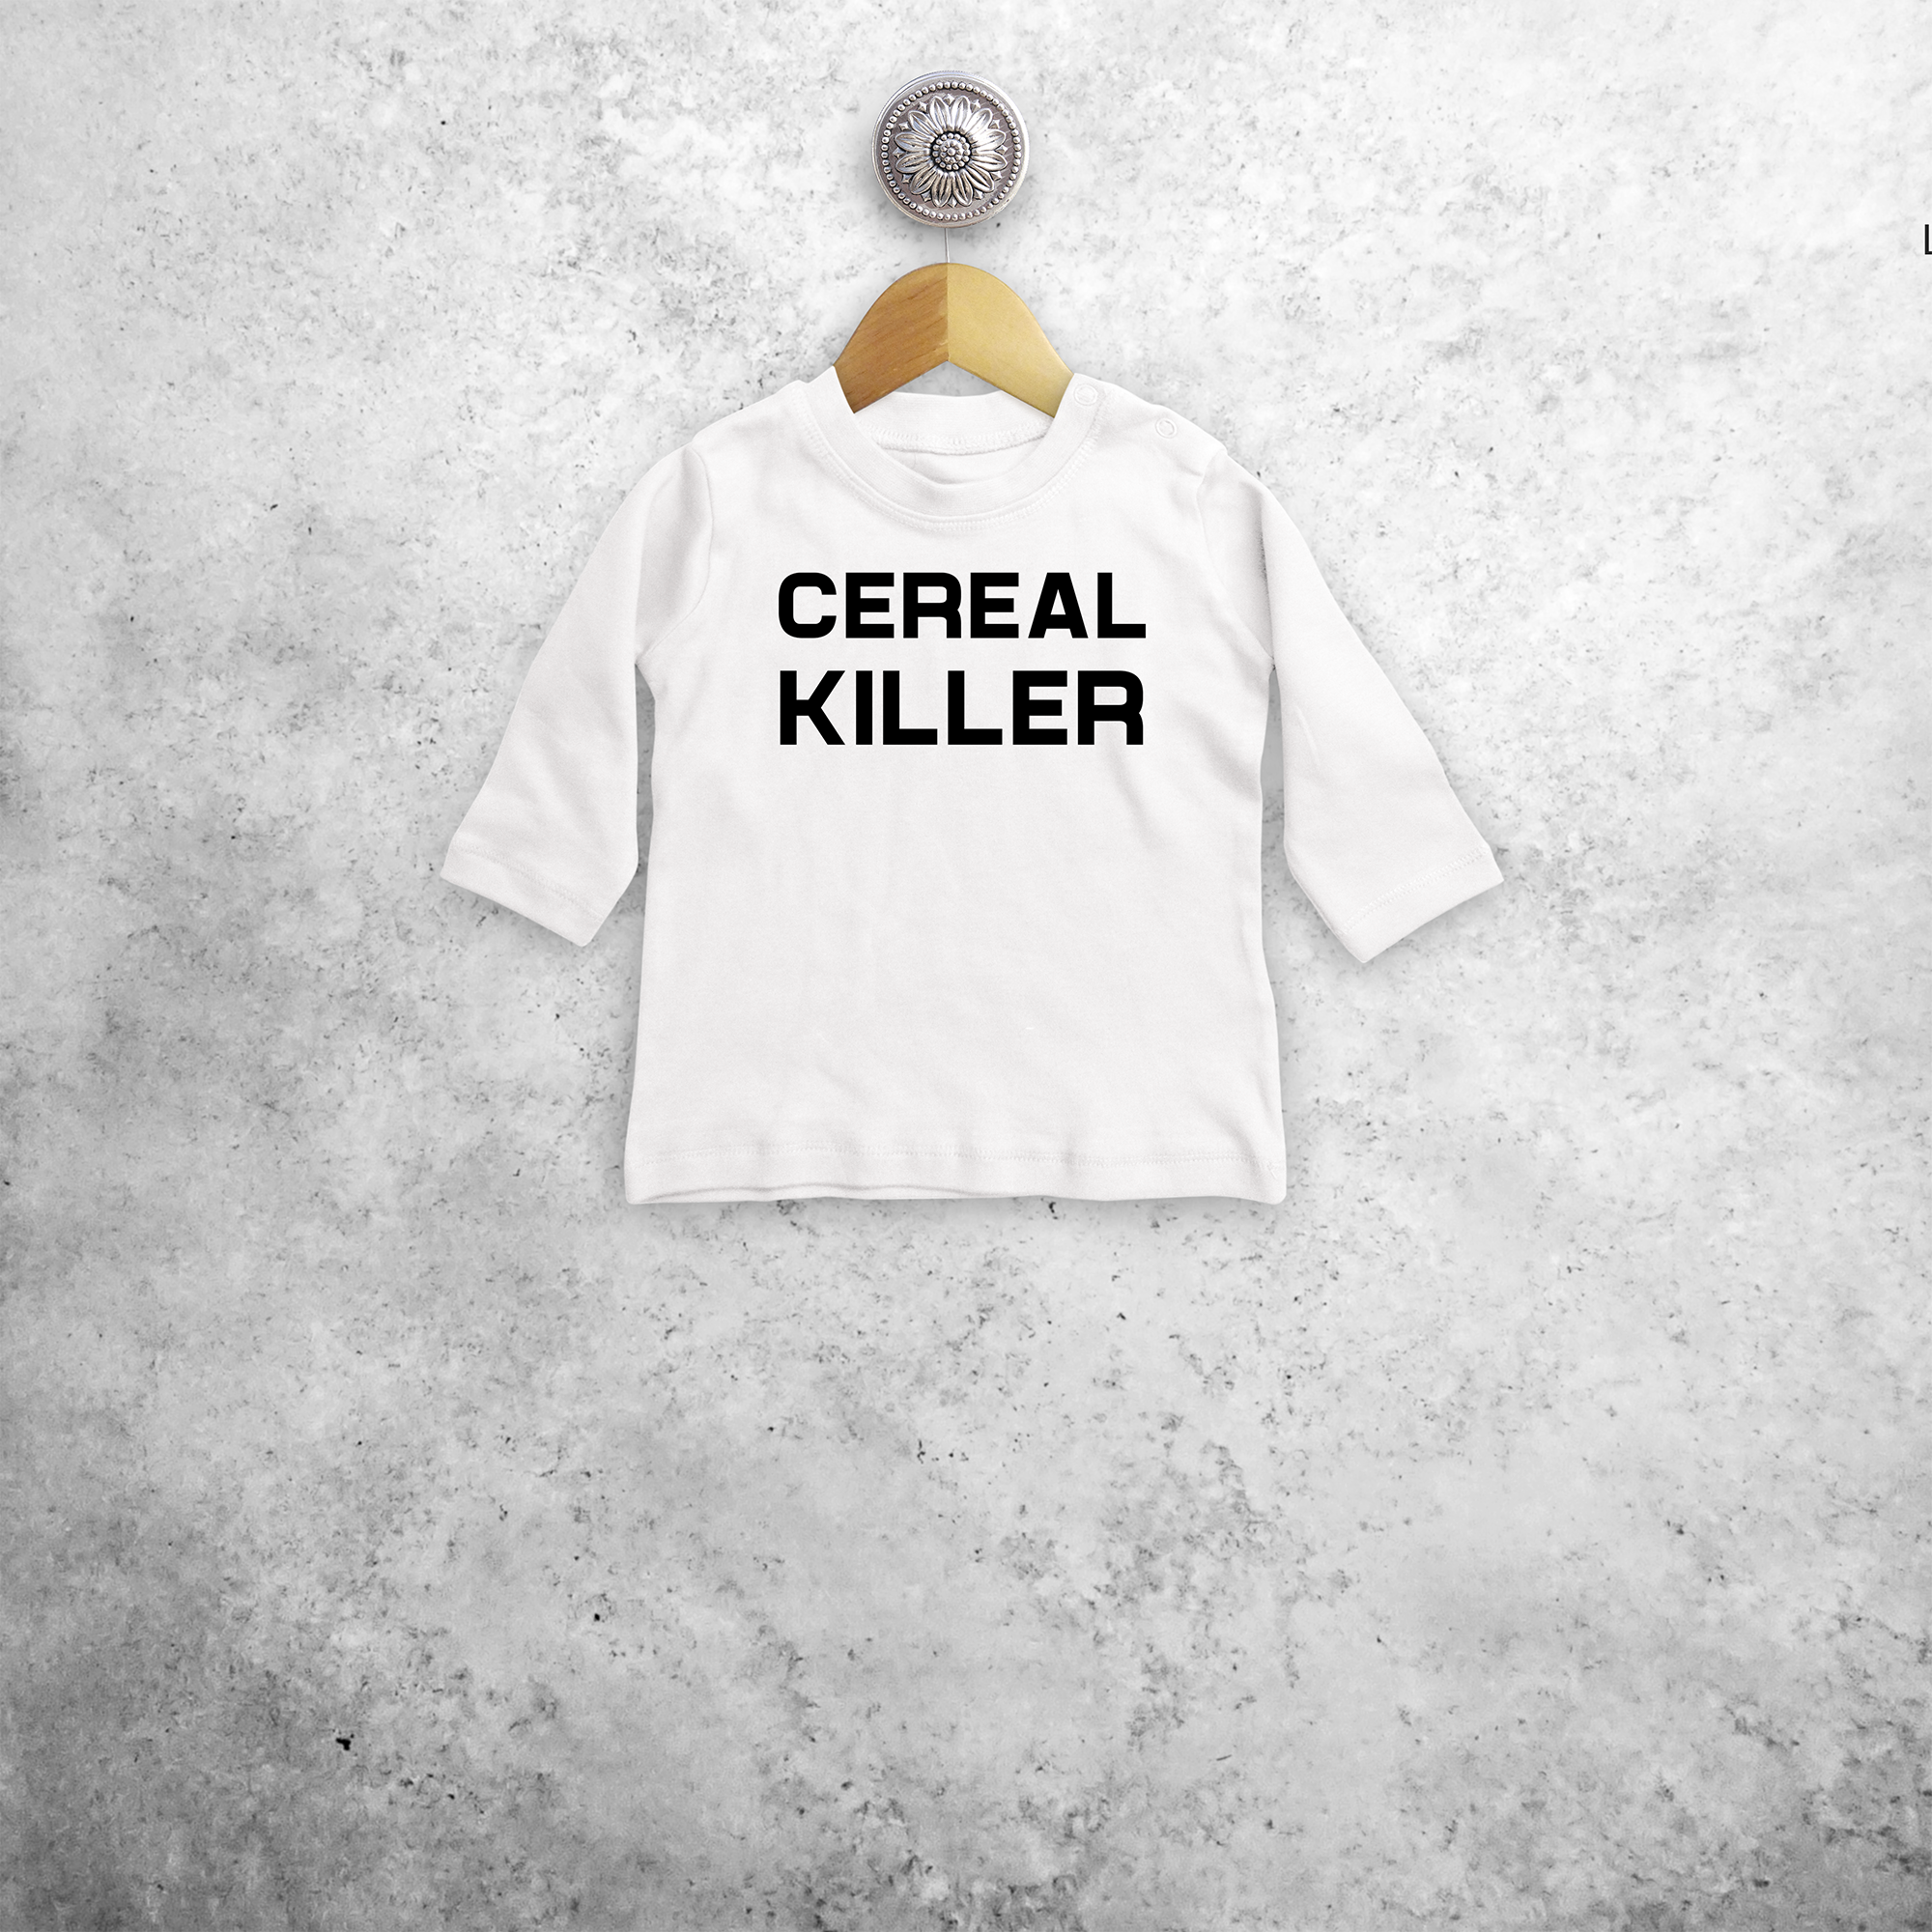 'Cereal killer' baby shirt met lange mouwen